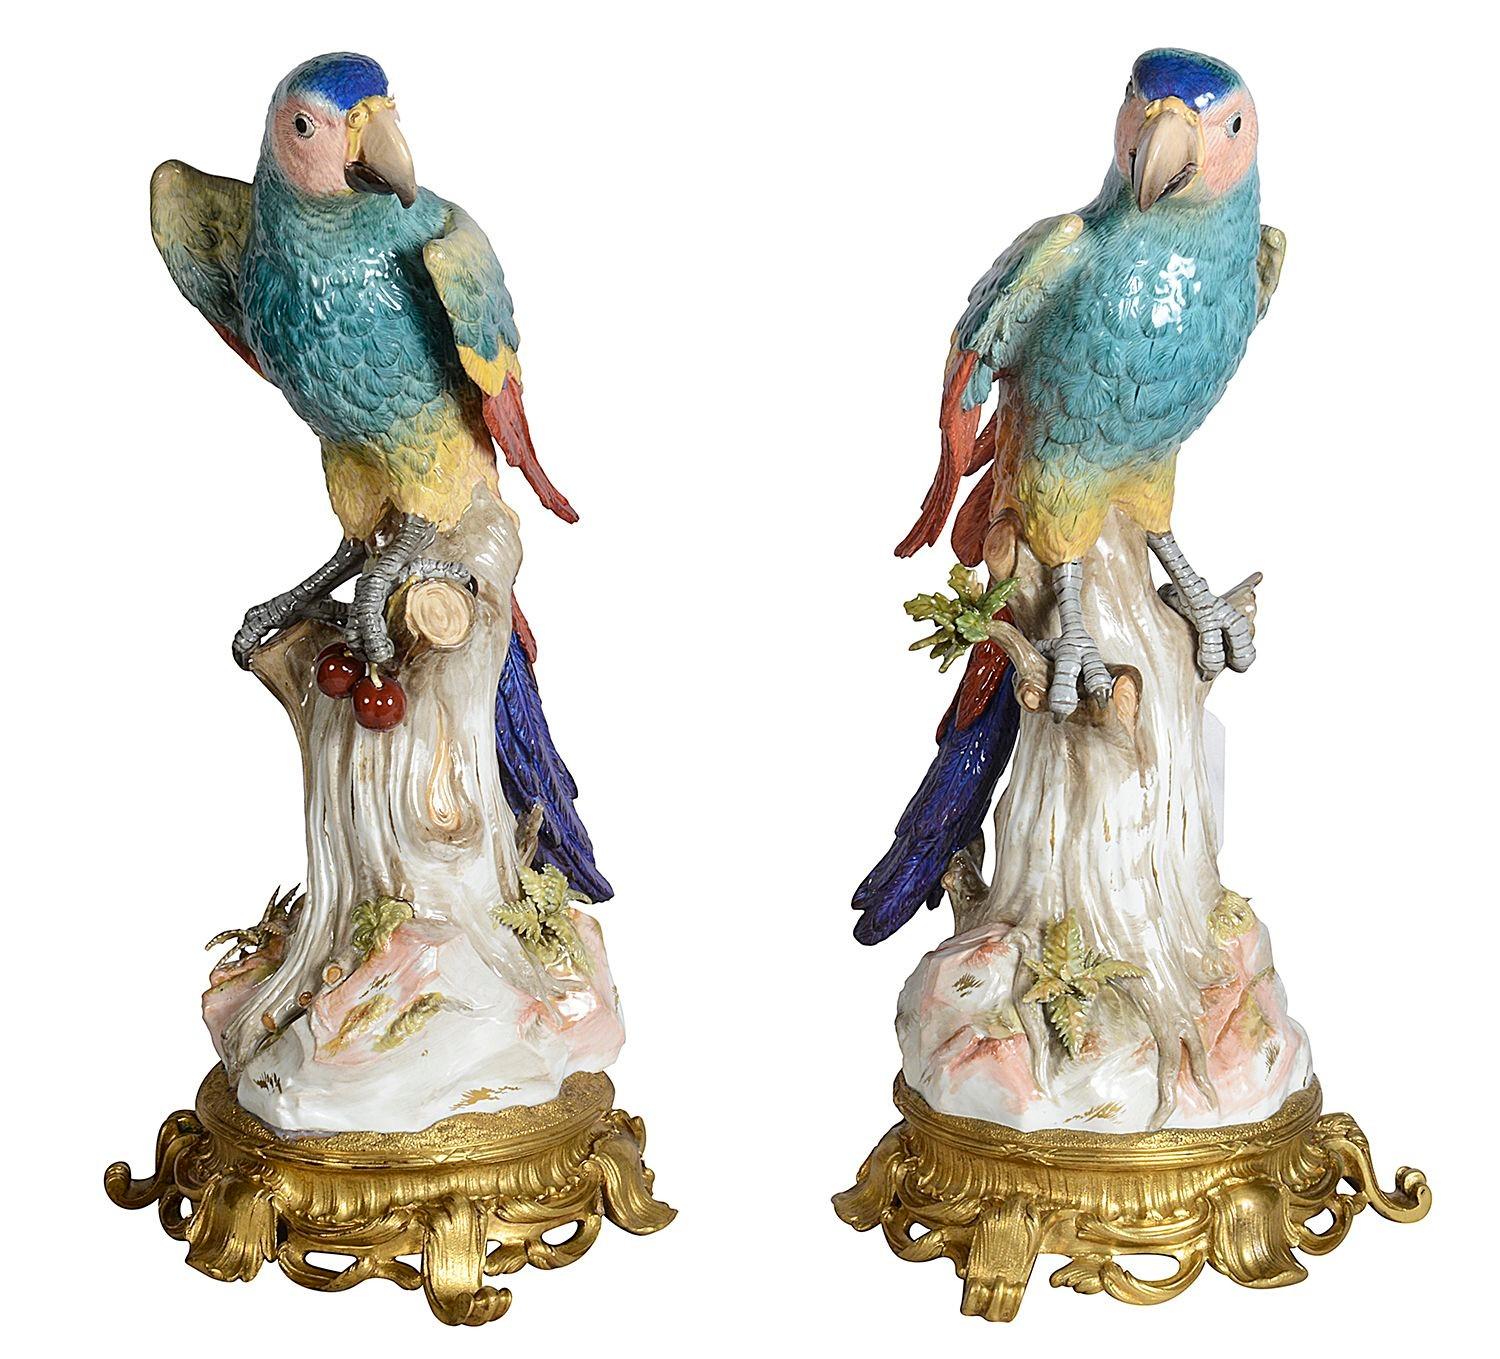 Rare et importante paire de perroquets en porcelaine de Meissen du XIXe siècle, chacun avec de magnifiques détails et couleurs vives, perchés sur des souches d'arbre, l'un avec des cerises dans ses griffes, montés sur des bases en bronze doré de